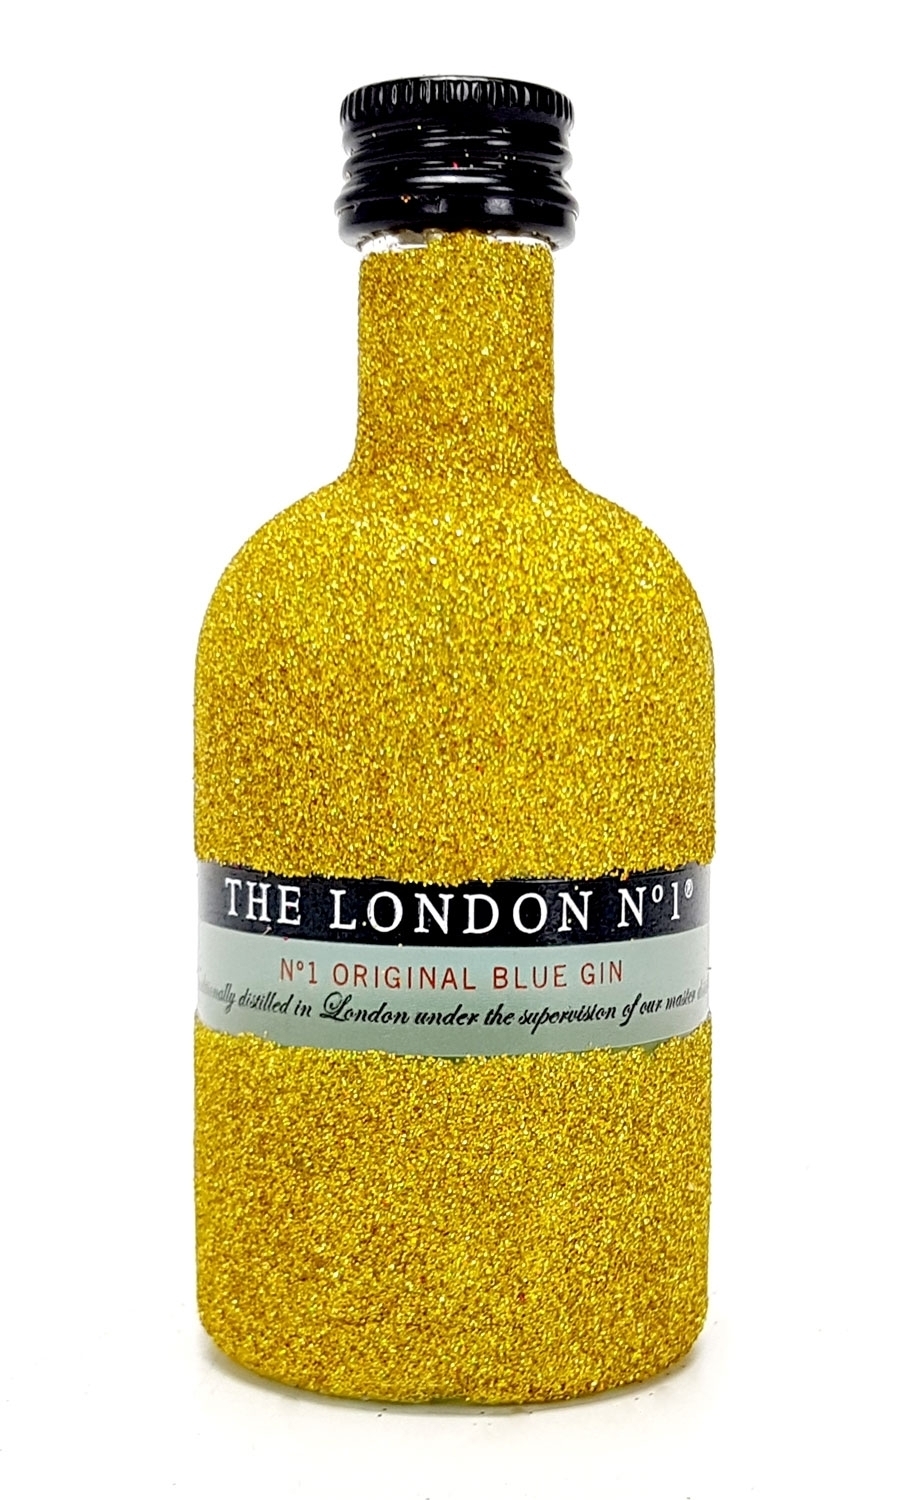 The London N1 Blue Gin Mini 50ml (47% Vol) - Bling Bling Glitzer Glitzerflasche Flaschenveredelung für besondere Anlässe - Gold -[Enthält Sulfite]